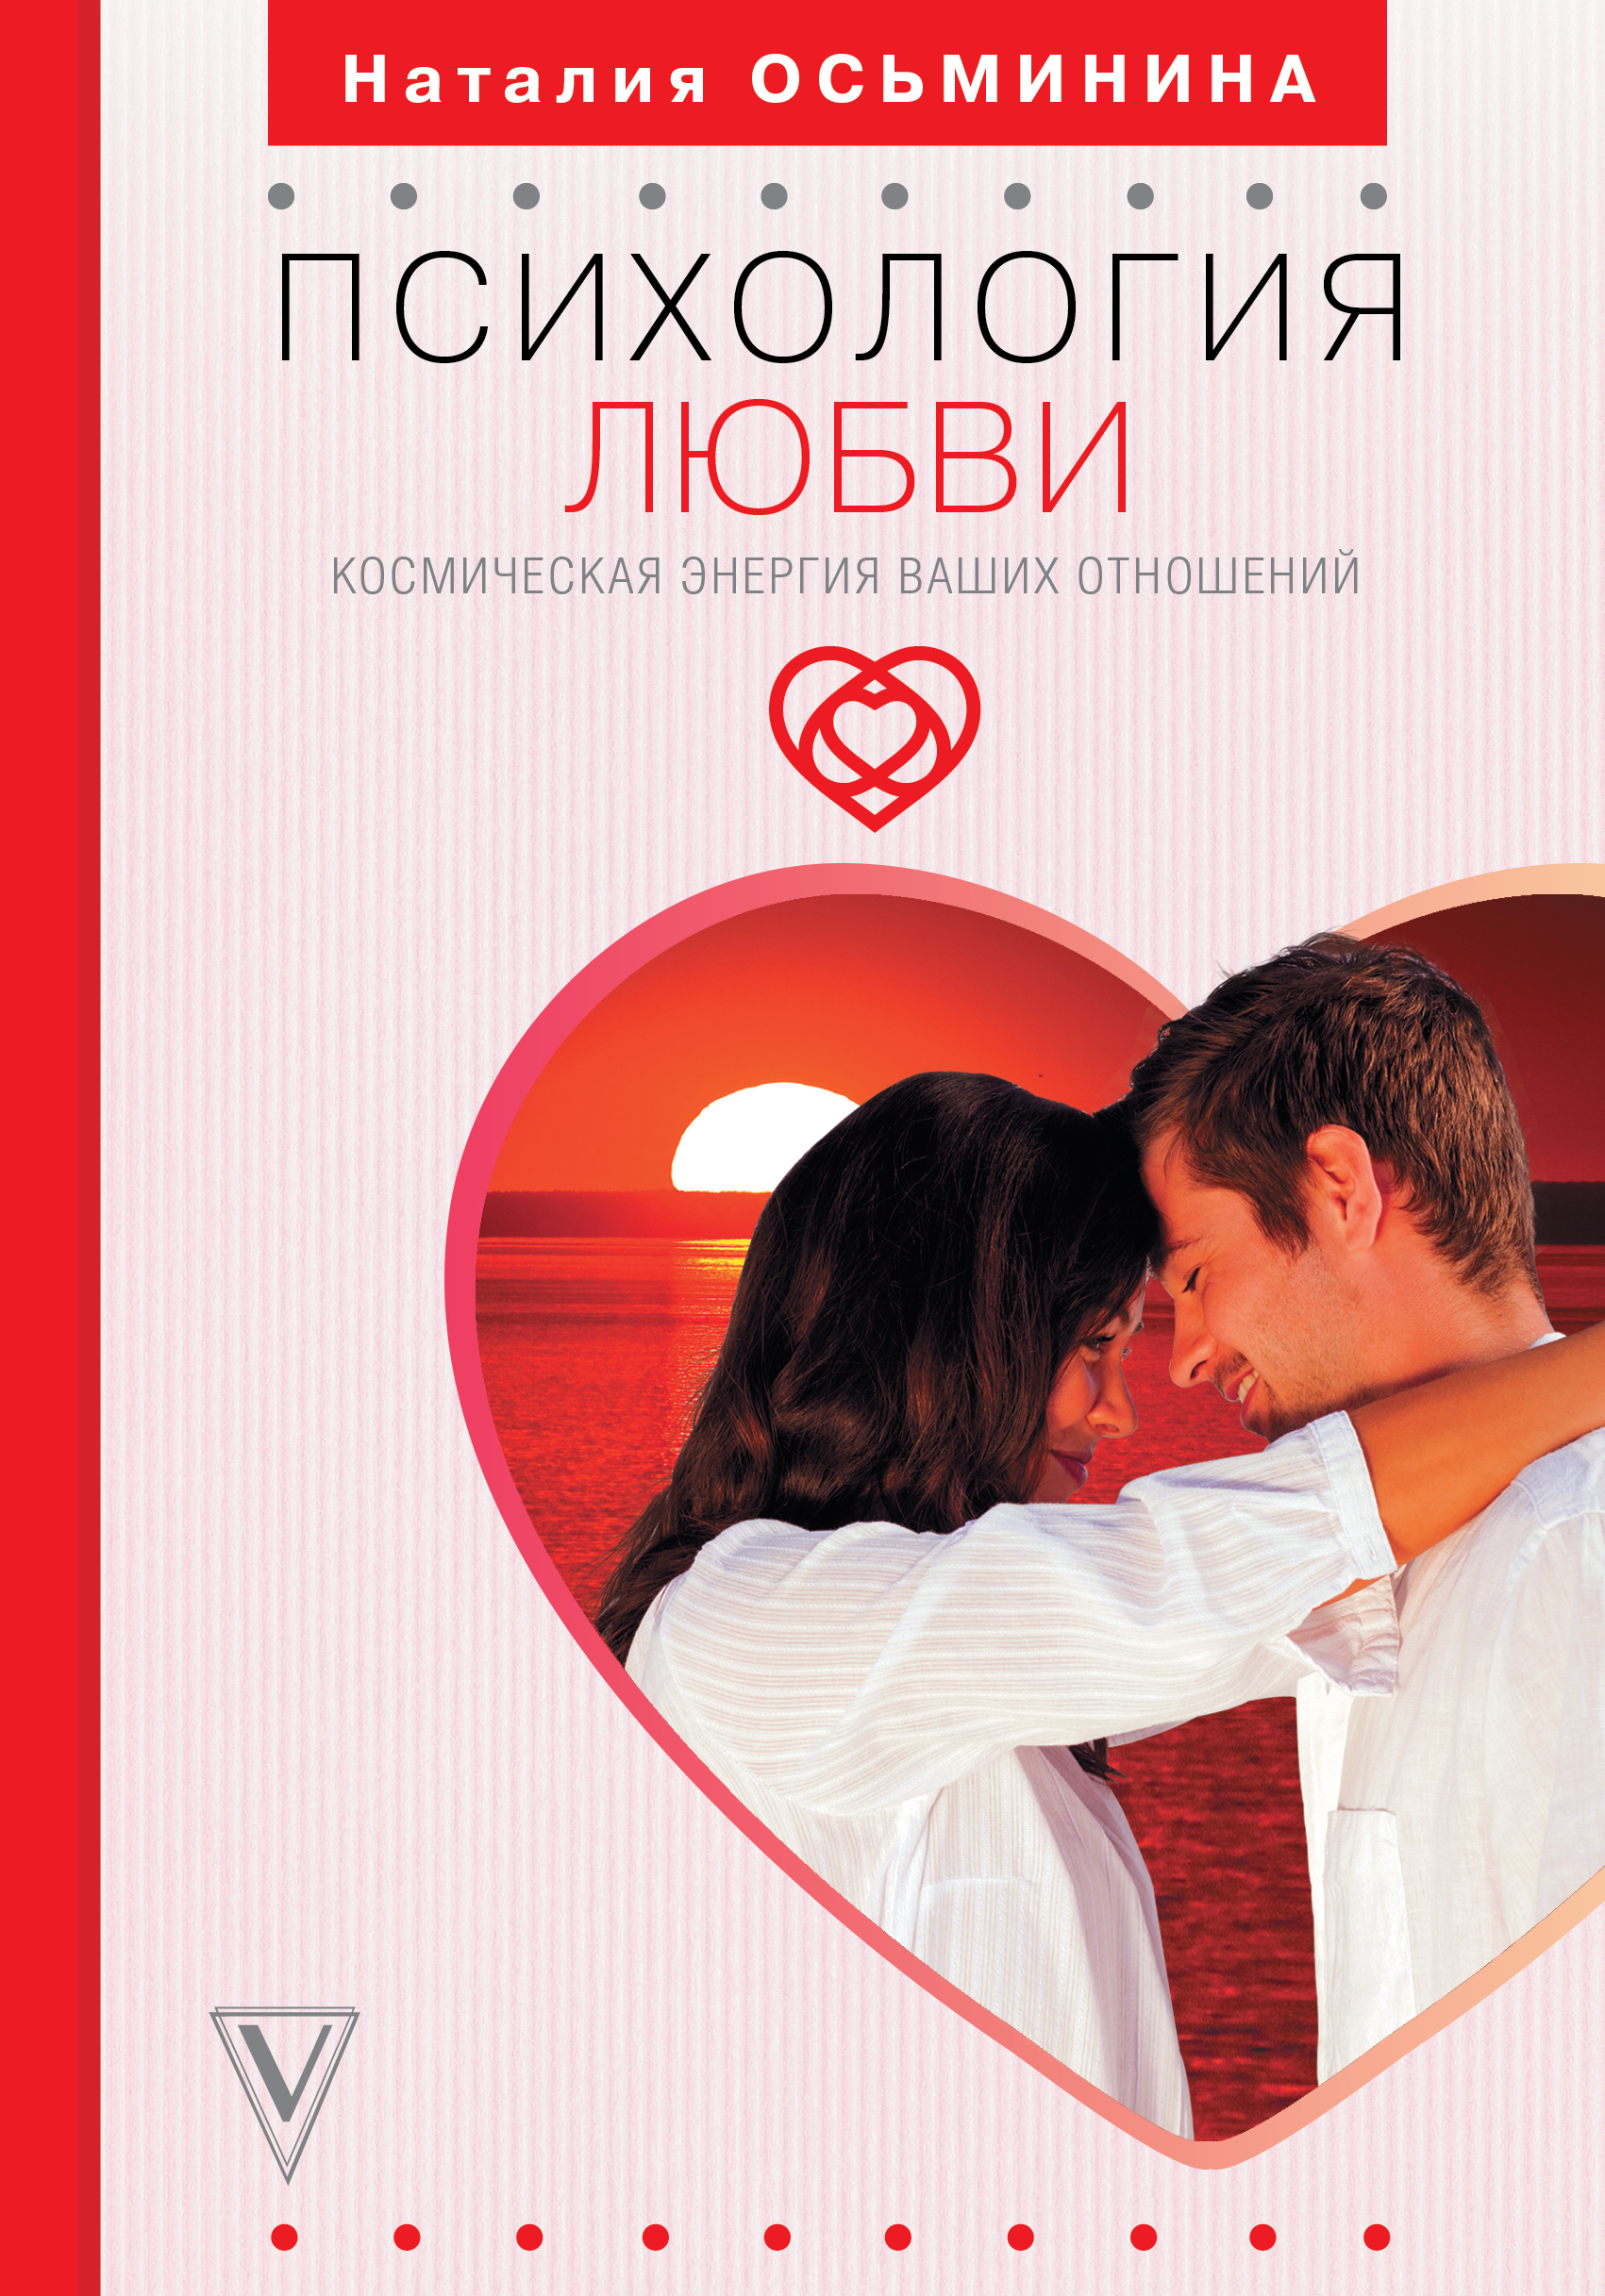 5 языков любви: какие они и как влияют на отношения | РБК Тренды